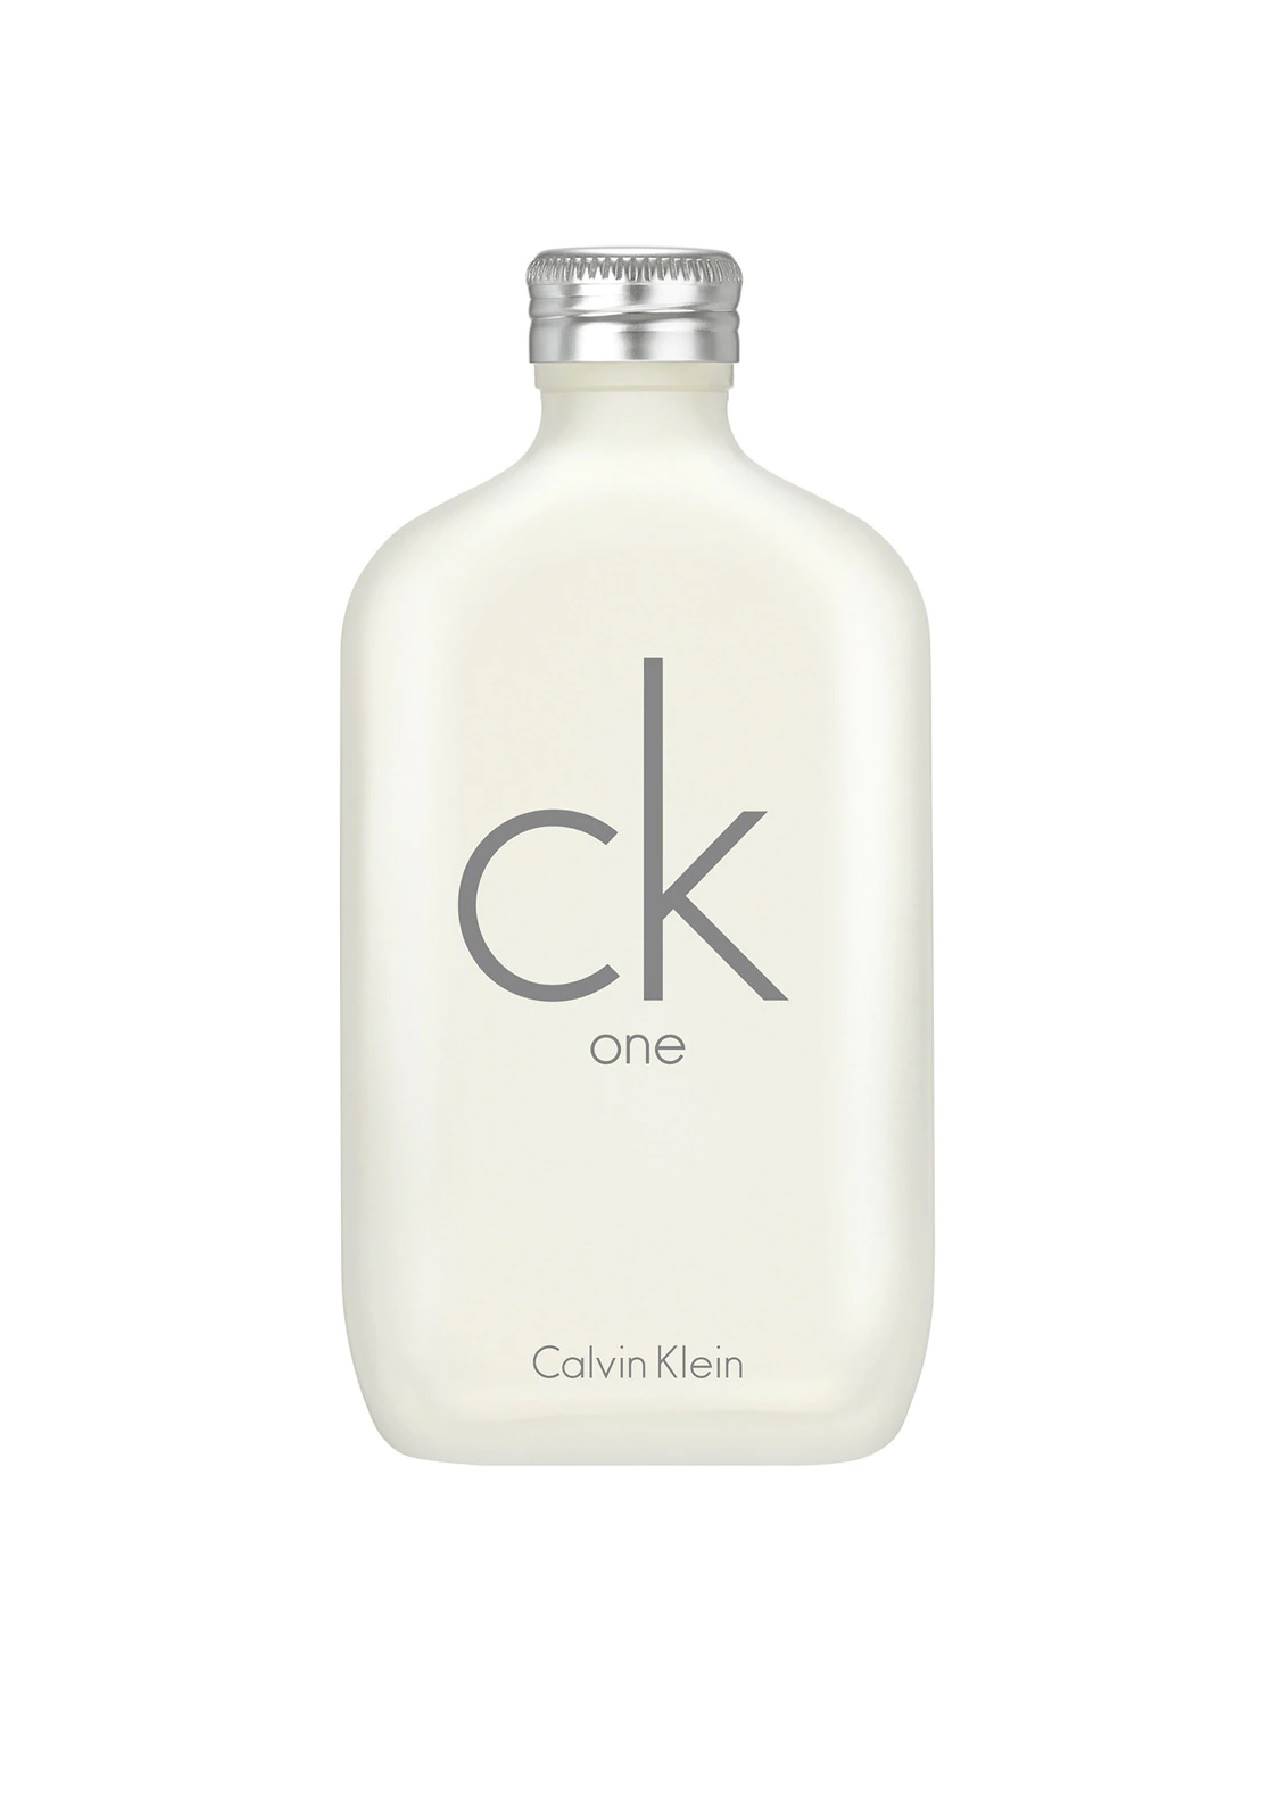 perfumes más vendidos One de Calvin Klein El Corte Inglés, 29,95€